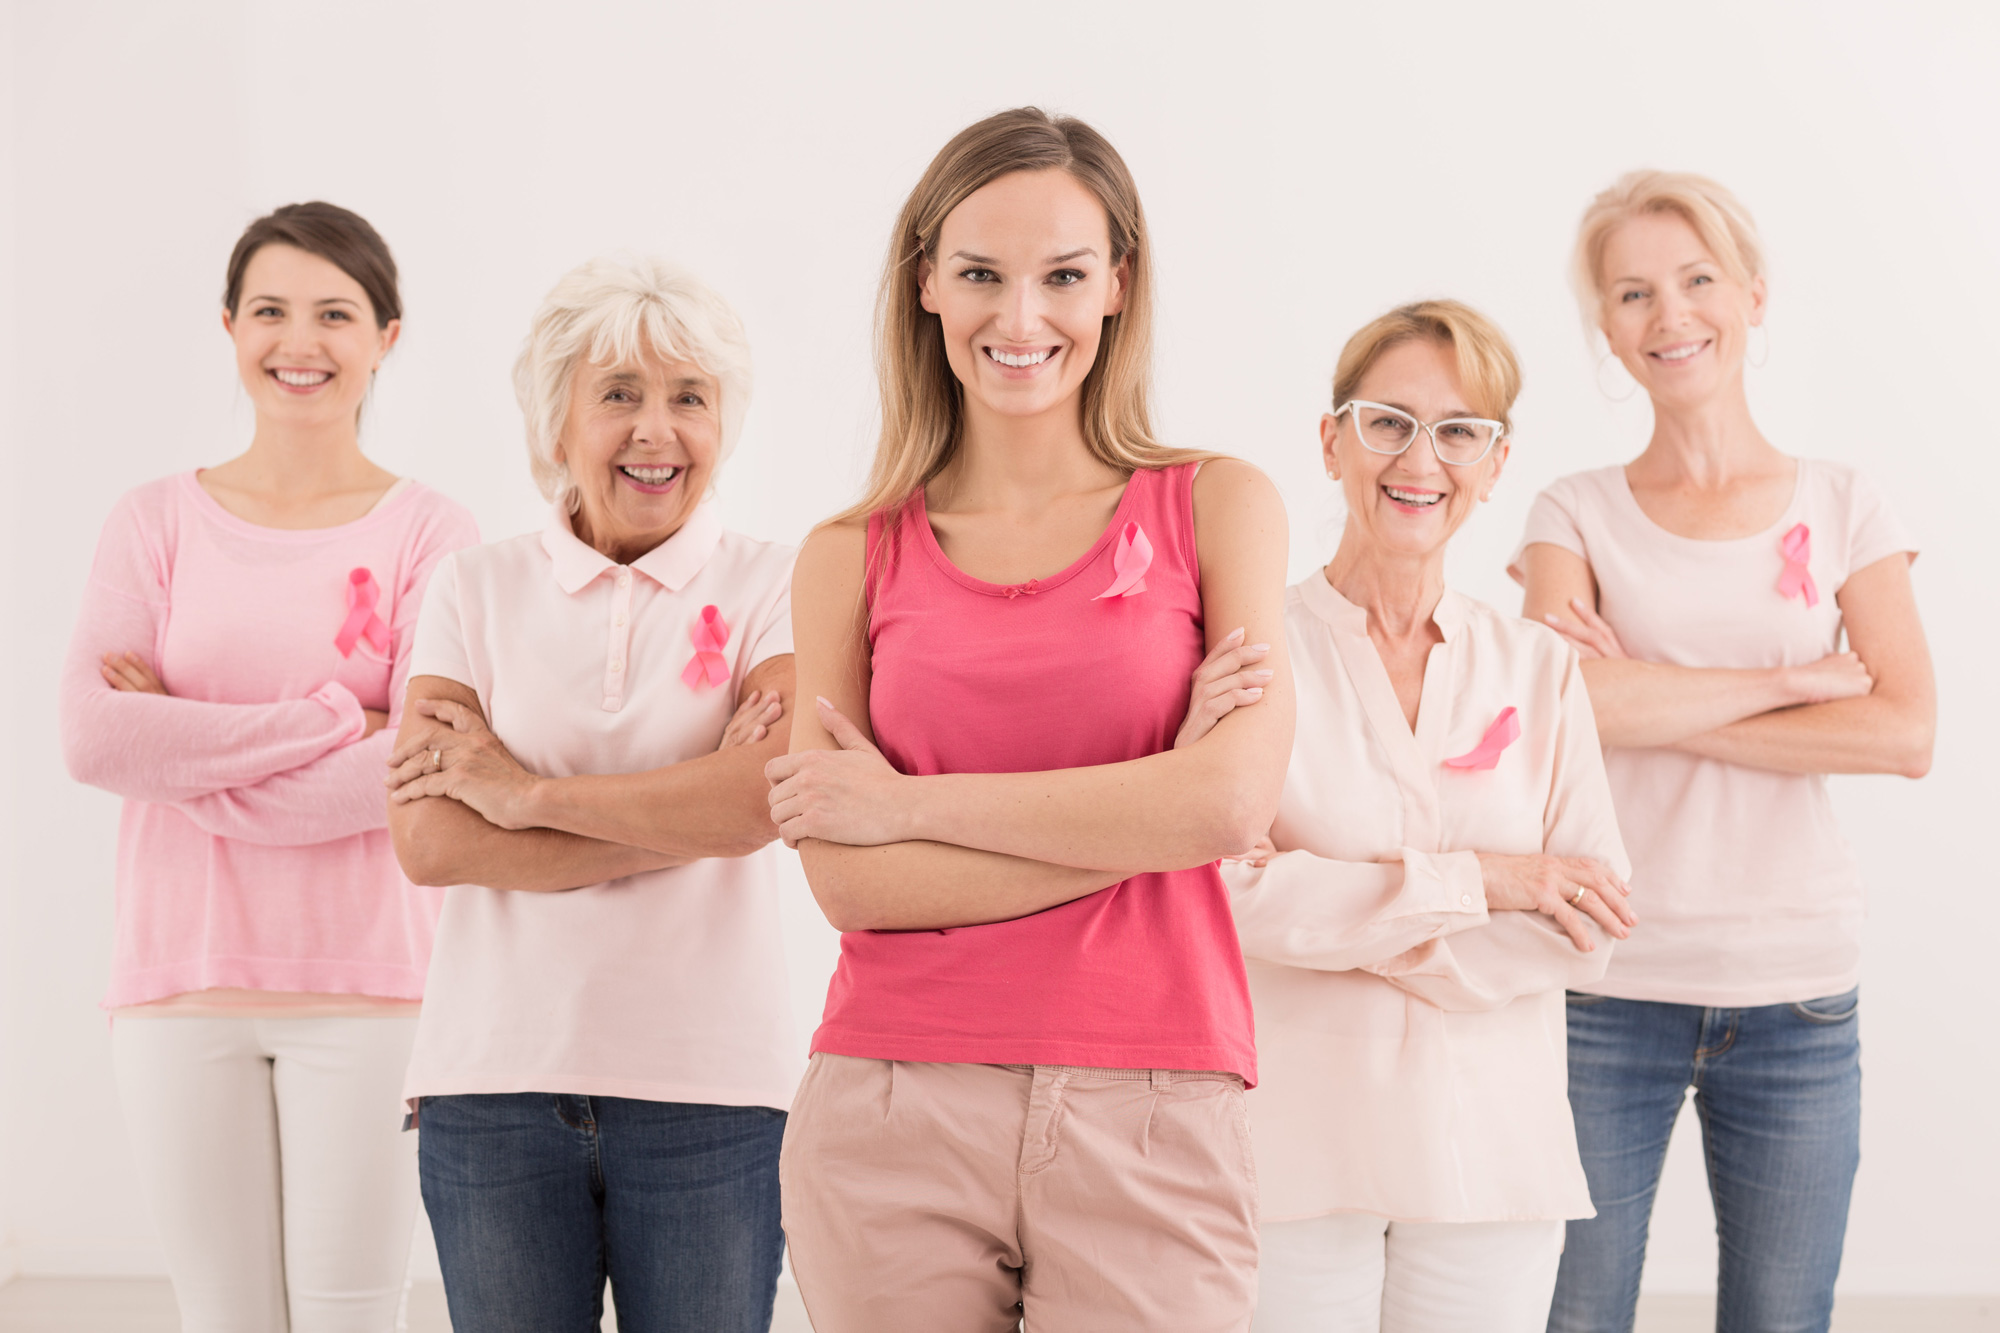 La importancia de la mamografía